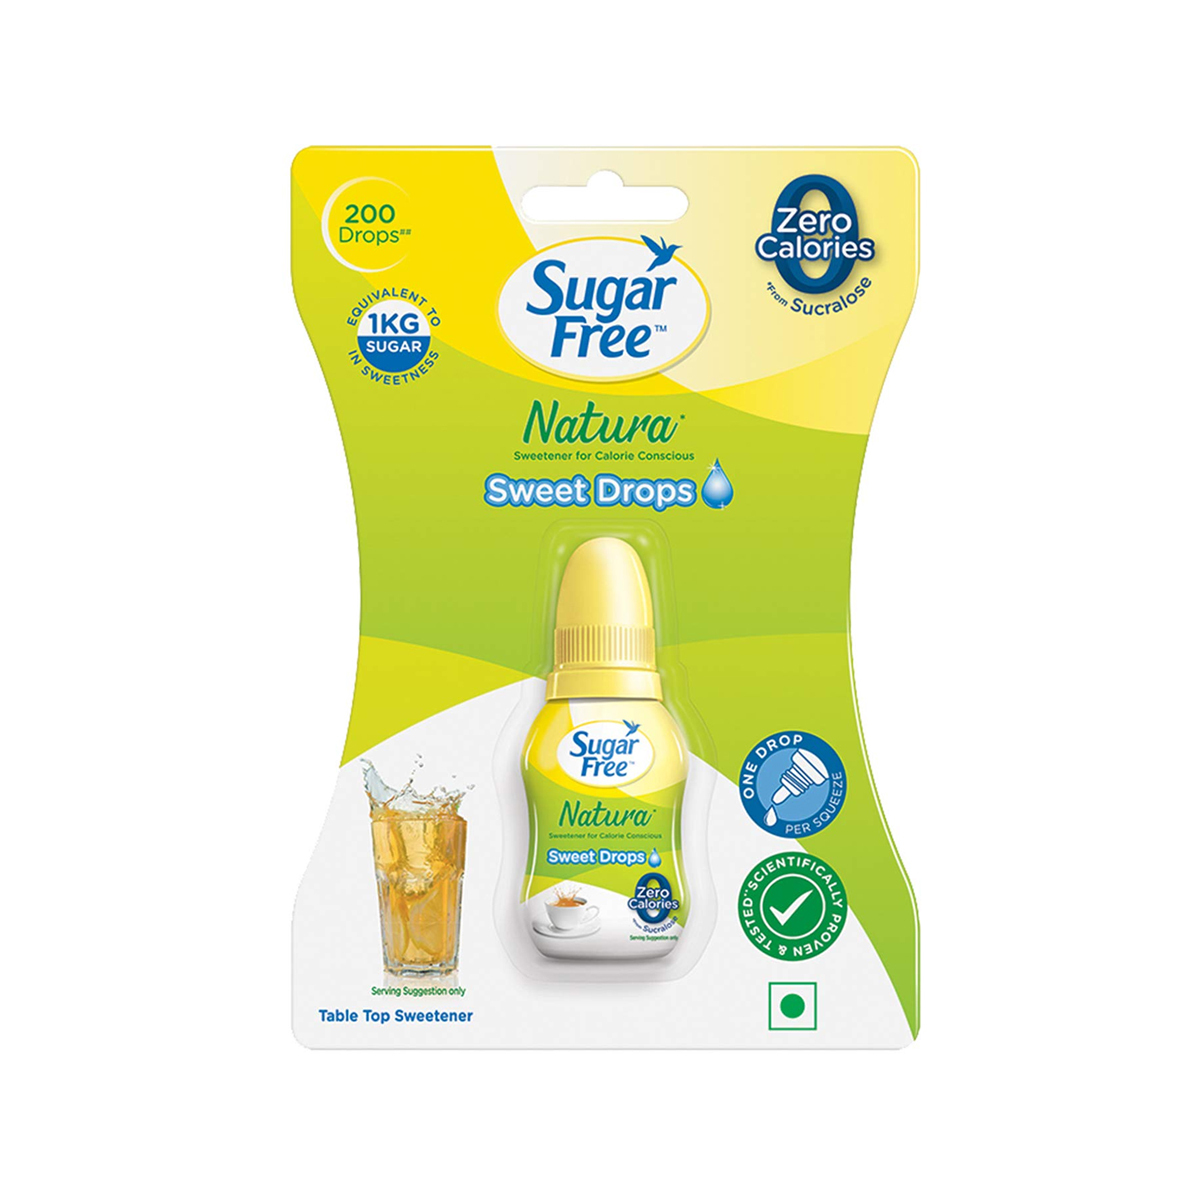 Sugar Free Natura Sweet Drops 10ml